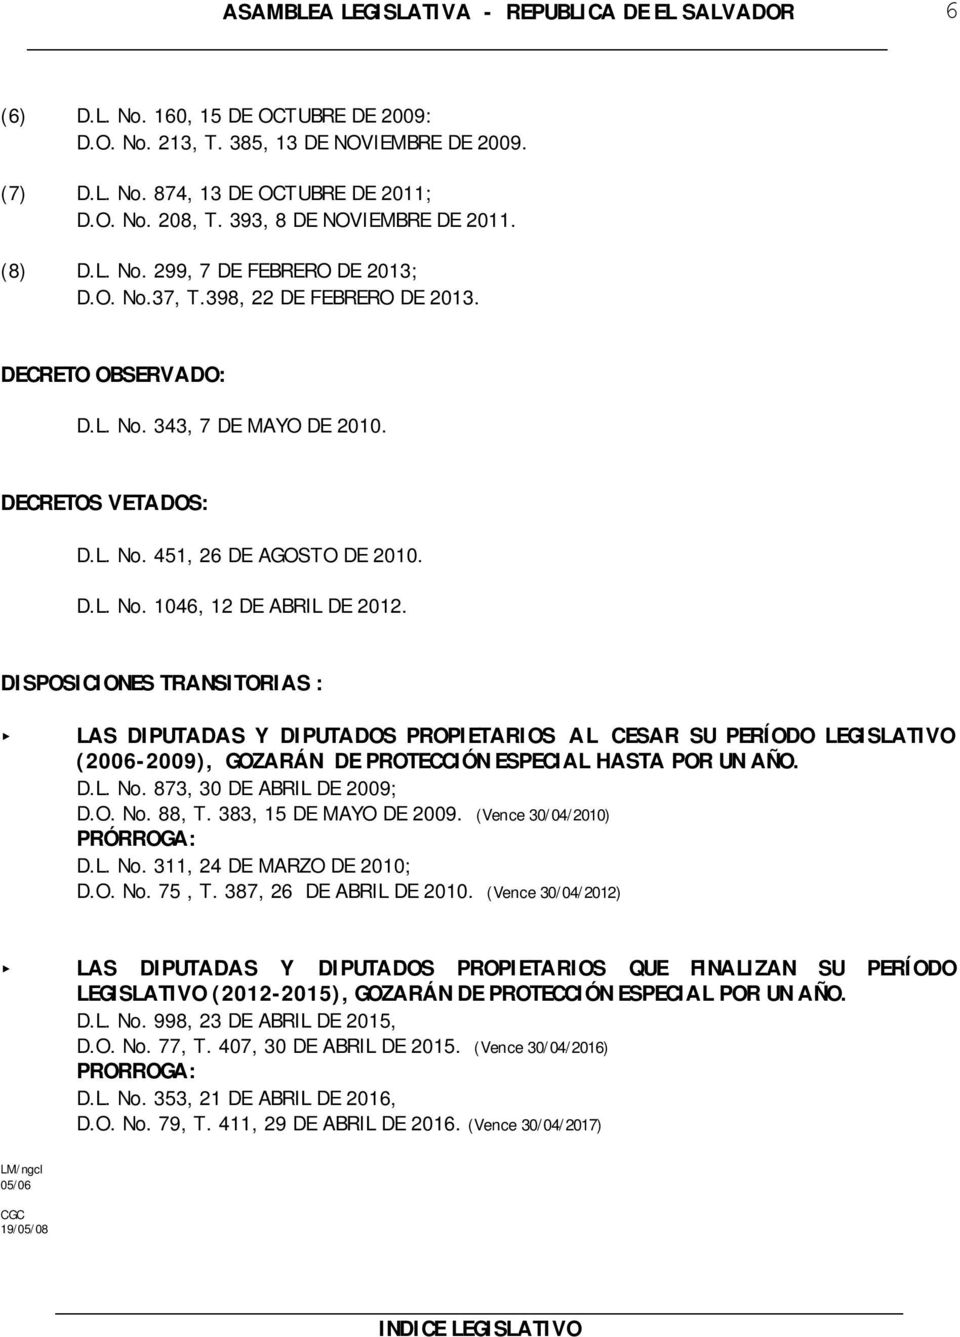 DISPOSICIONES TRANSITORIAS : LAS DIPUTADAS Y DIPUTADOS PROPIETARIOS A L CESAR SU PERÍODO LEGISLATIVO (2006-2009), GOZARÁN DE PROTECCIÓN ESPECIAL HASTA POR UN AÑO. D.L. No. 873, 30 DE ABRIL DE 2009; D.